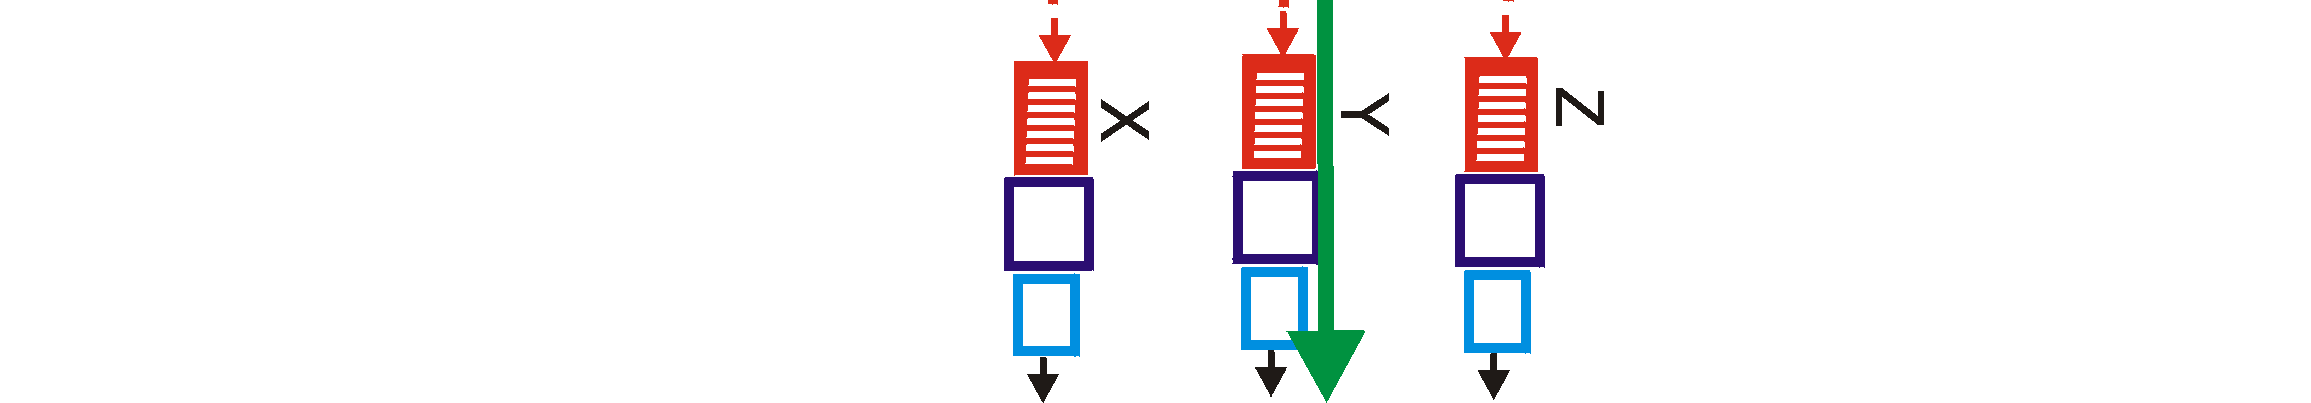 Kolme erilaista kytkentätapaa: Fig 4.